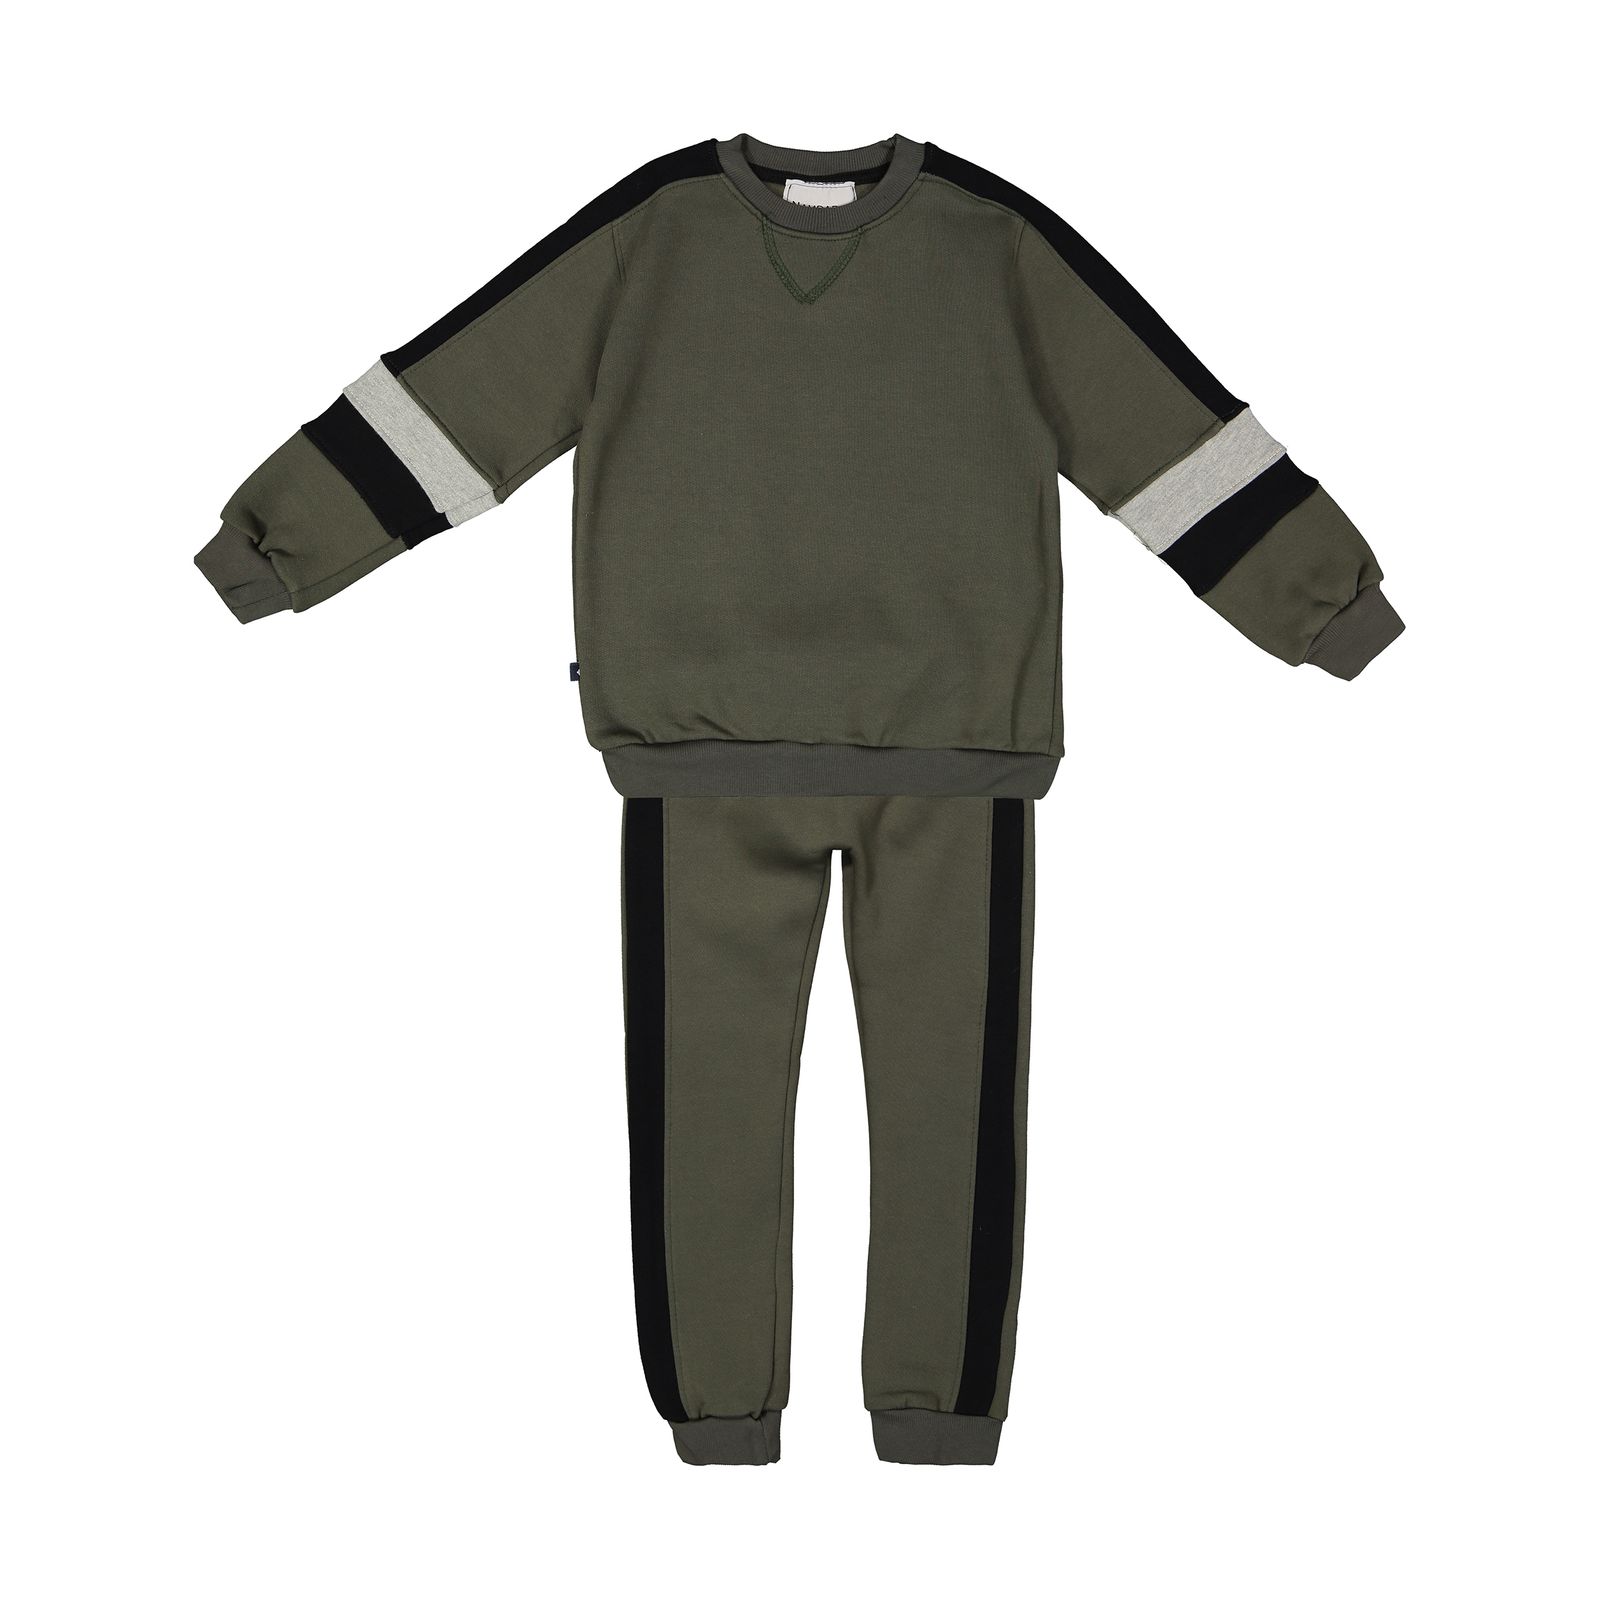 ست تی شرت و شلوار پسرانه نامدارز مدل 2021106-49 - سبز ارتشی - 1